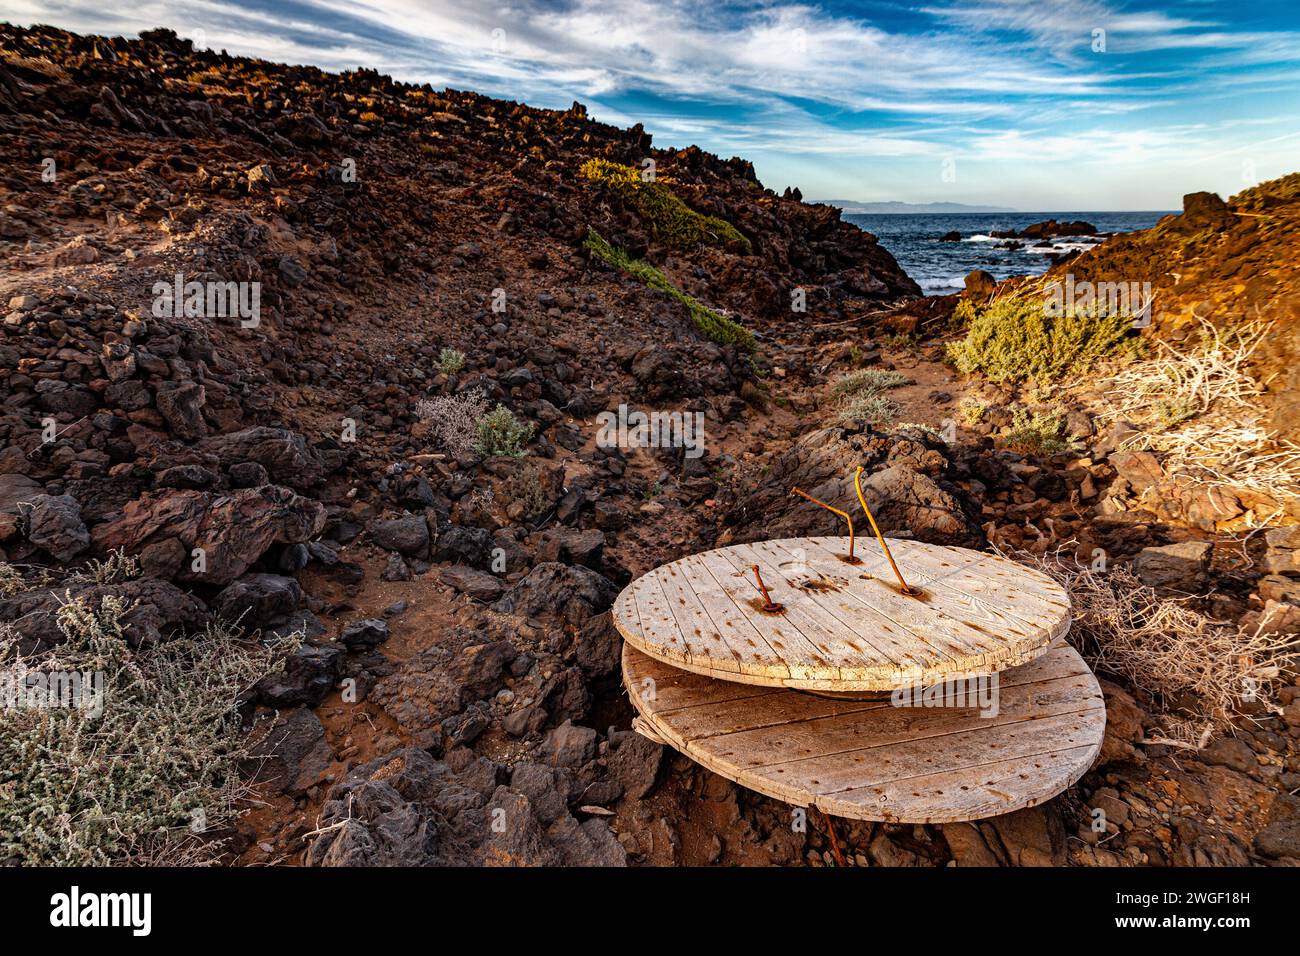 Litter in coastal environment of Porís de Abona (Tenerife island) Stock Photo